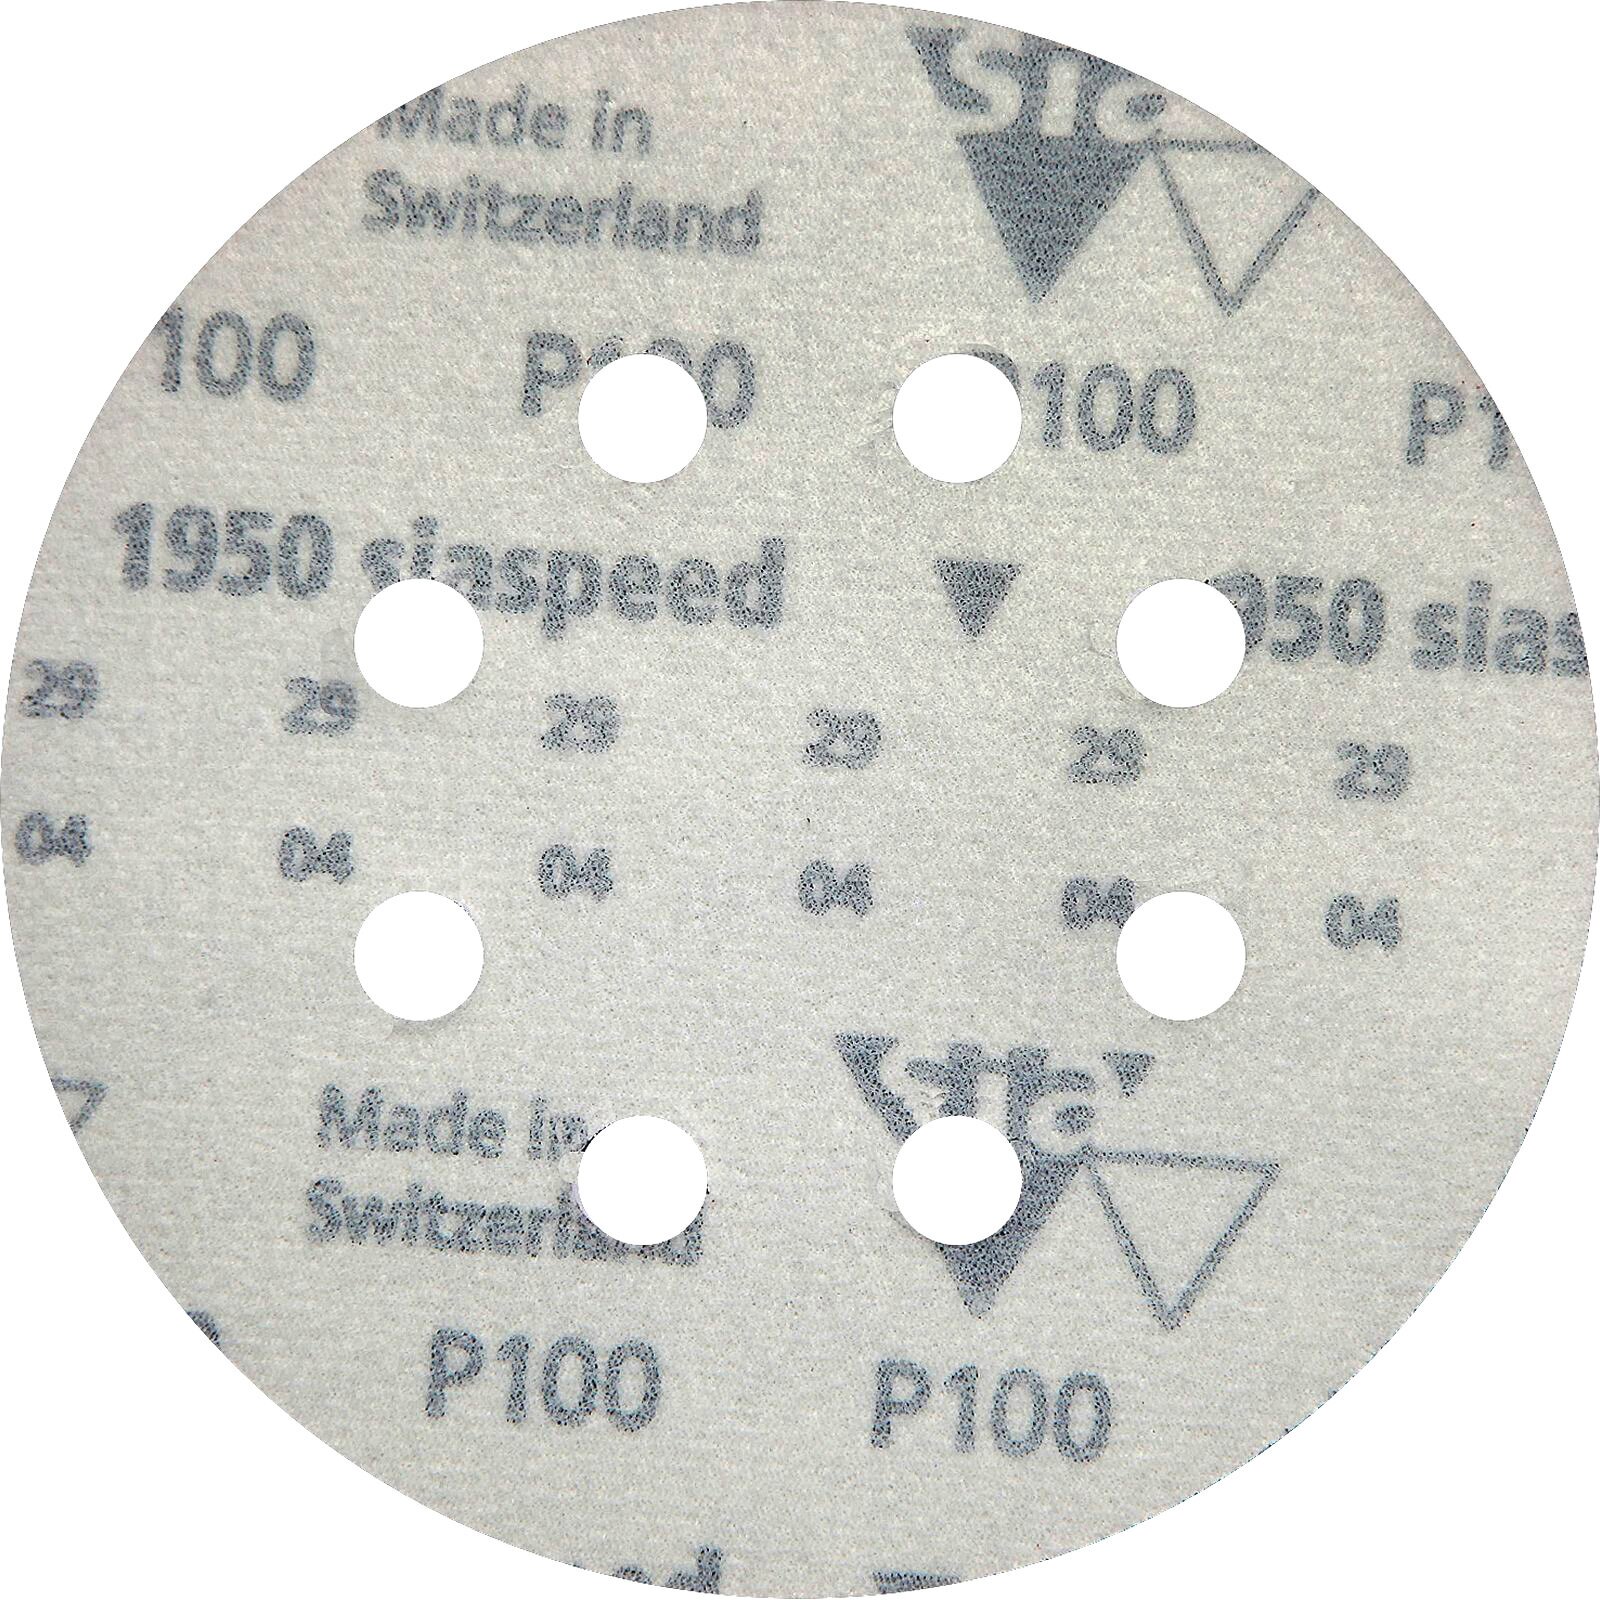 Круг шлифовальный на липучке "siaspeed 1950" - 6  D 125 8 отверстий Р 100 водостойкая наждачная бумага наждачный круг наждачка шкурка